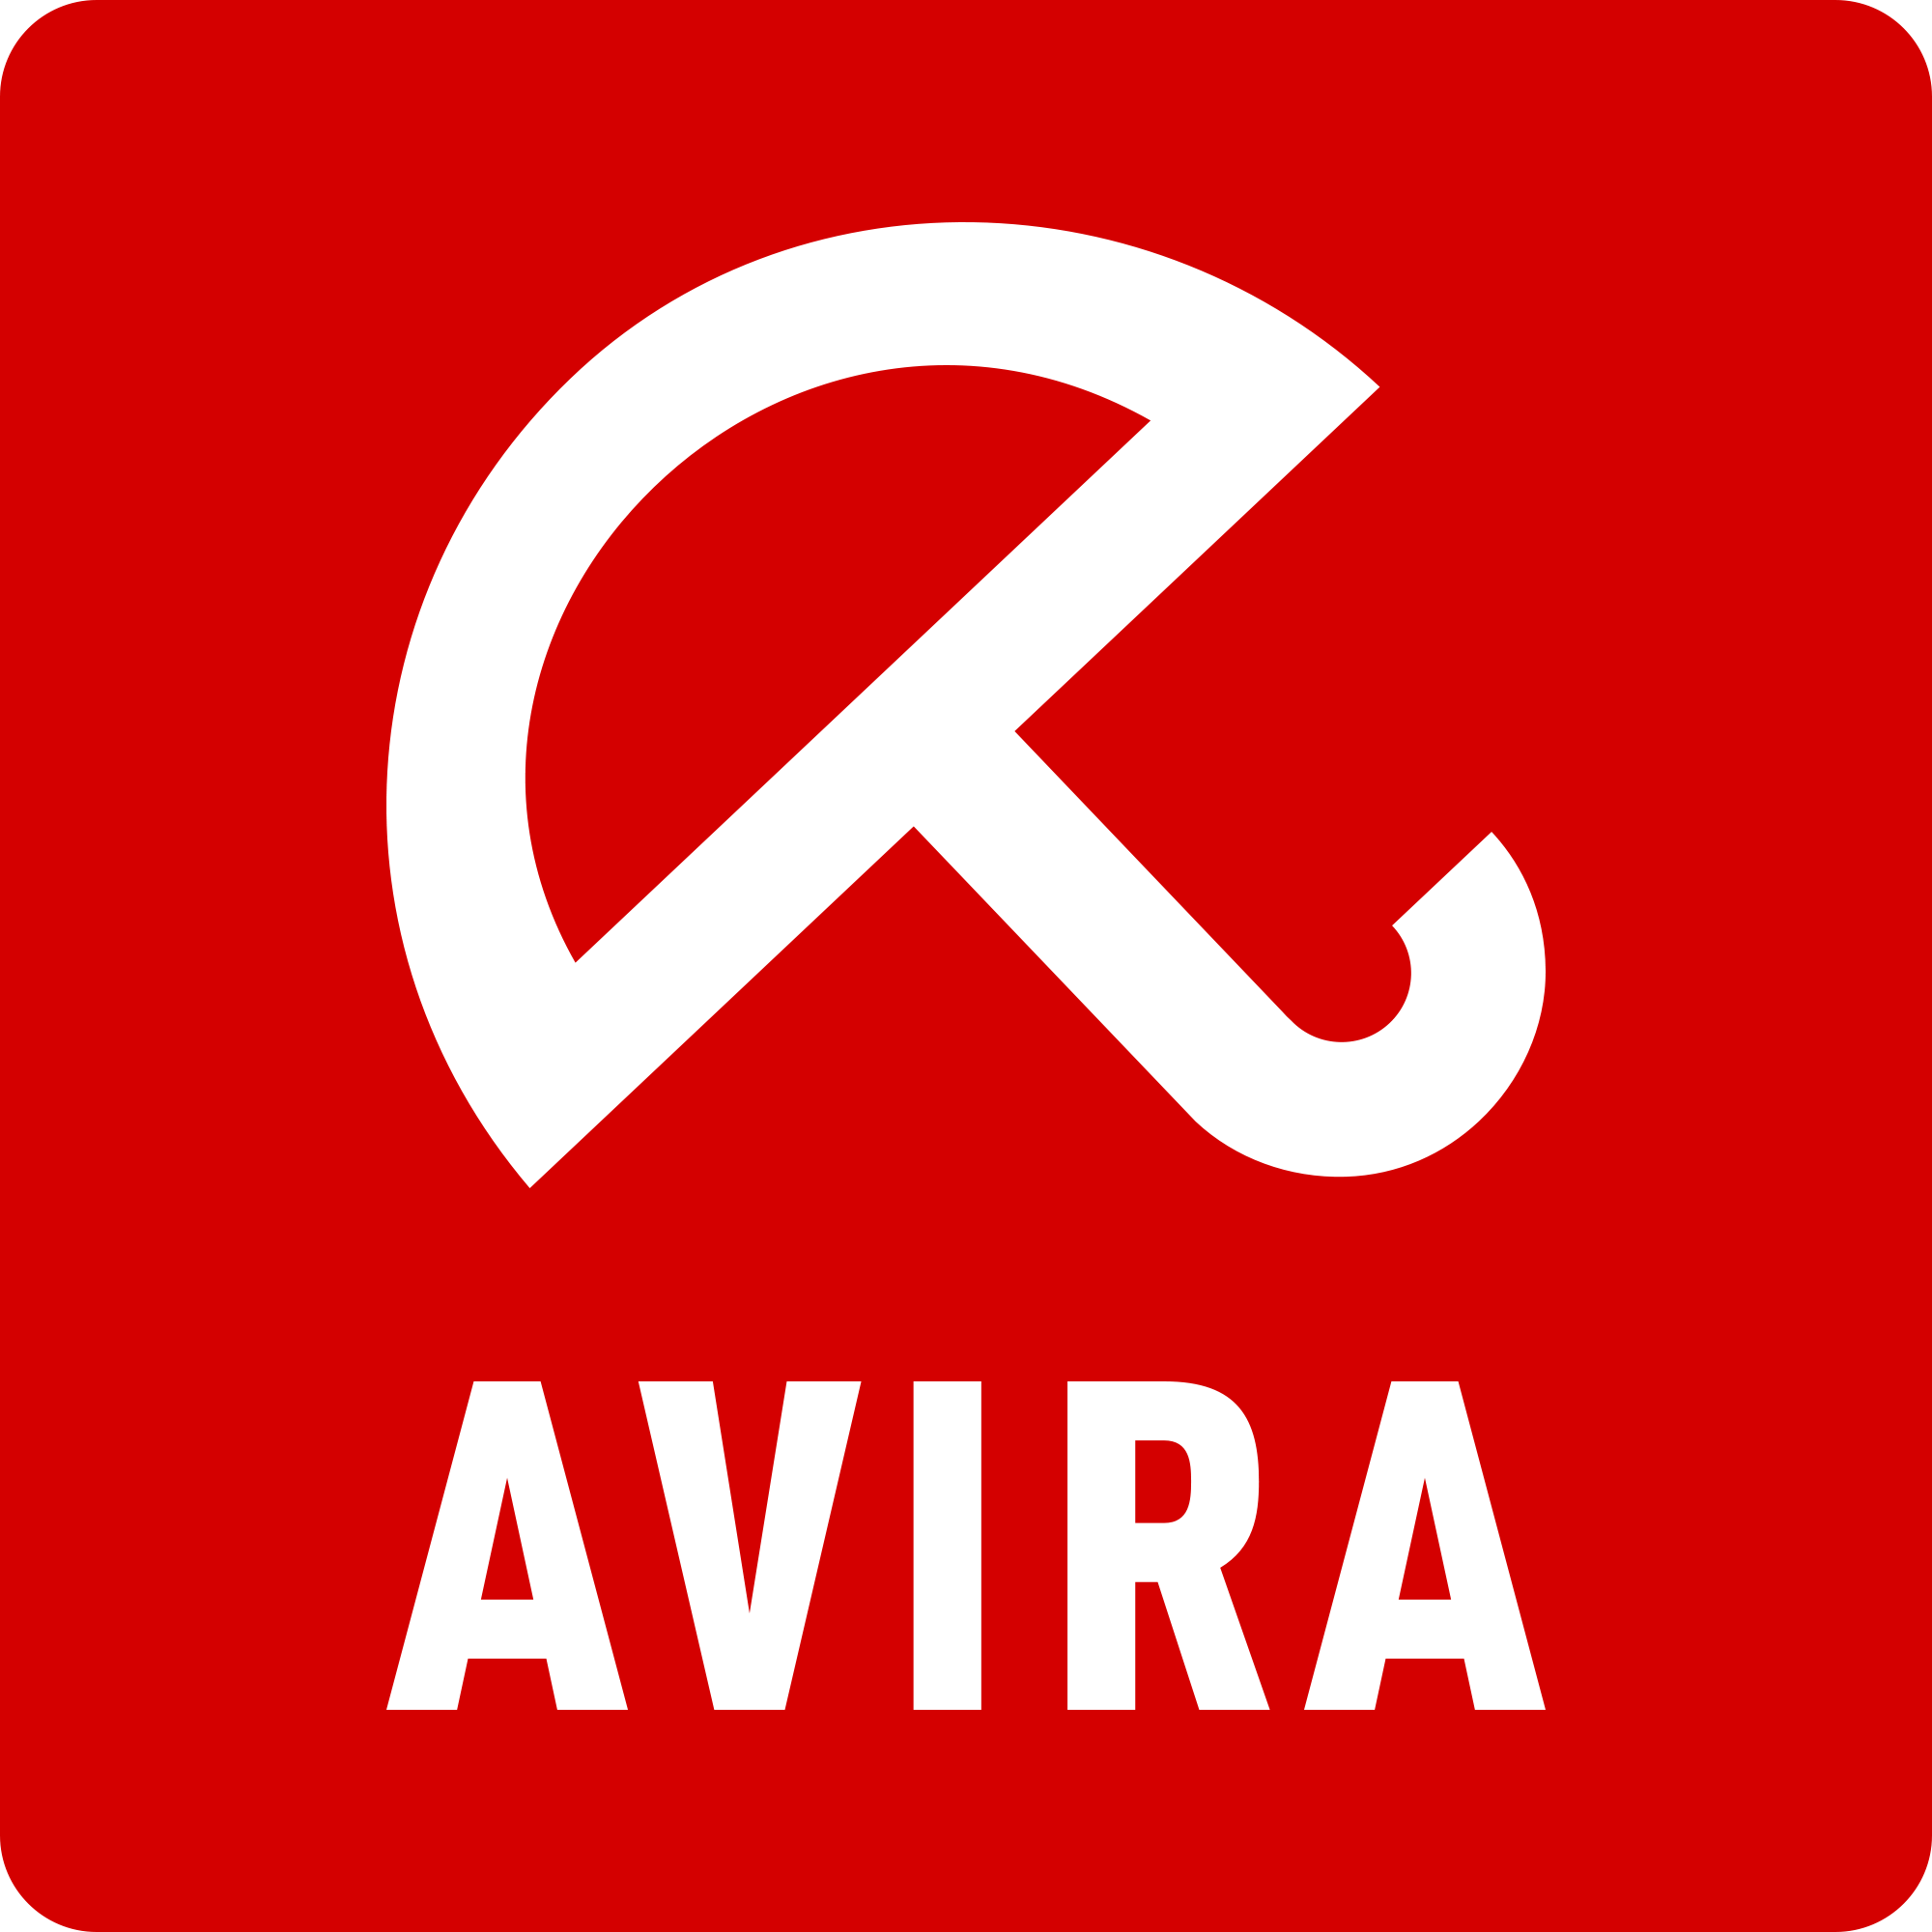 Avira - полезное приложение для защиты данных